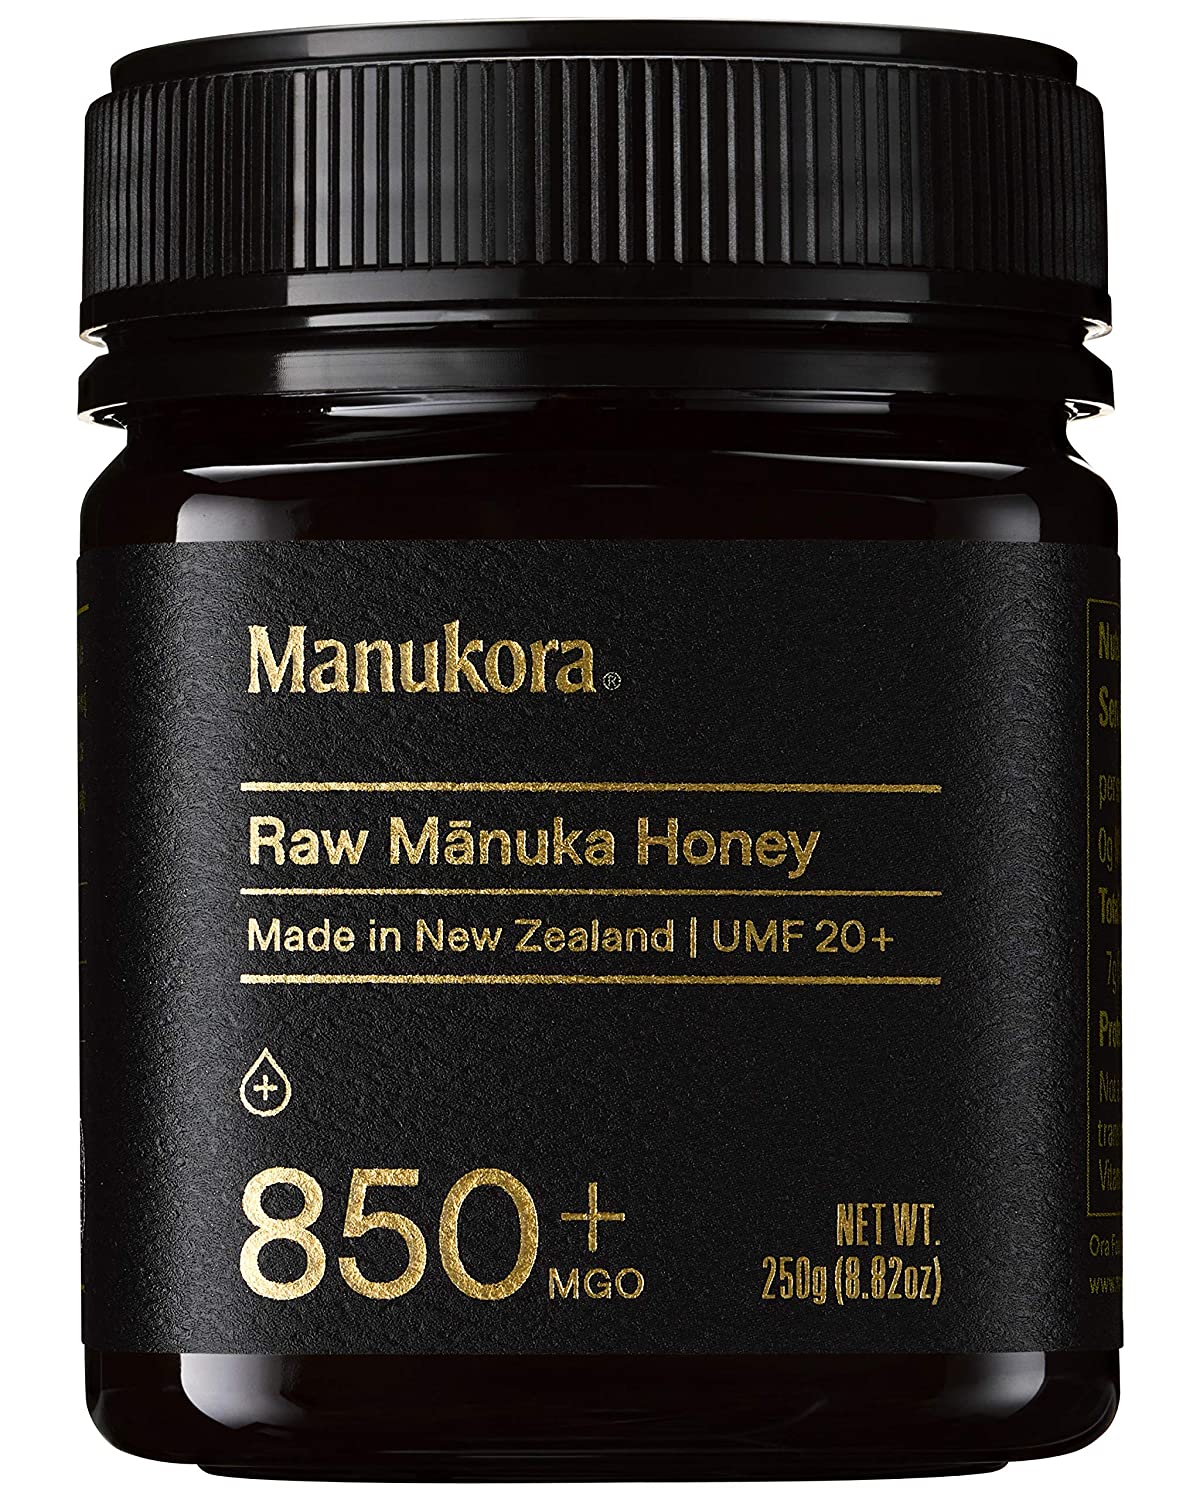 Manukora UMF 20+/MGO 850+ Raw Manuka Honey - 250g/8.8oz-0